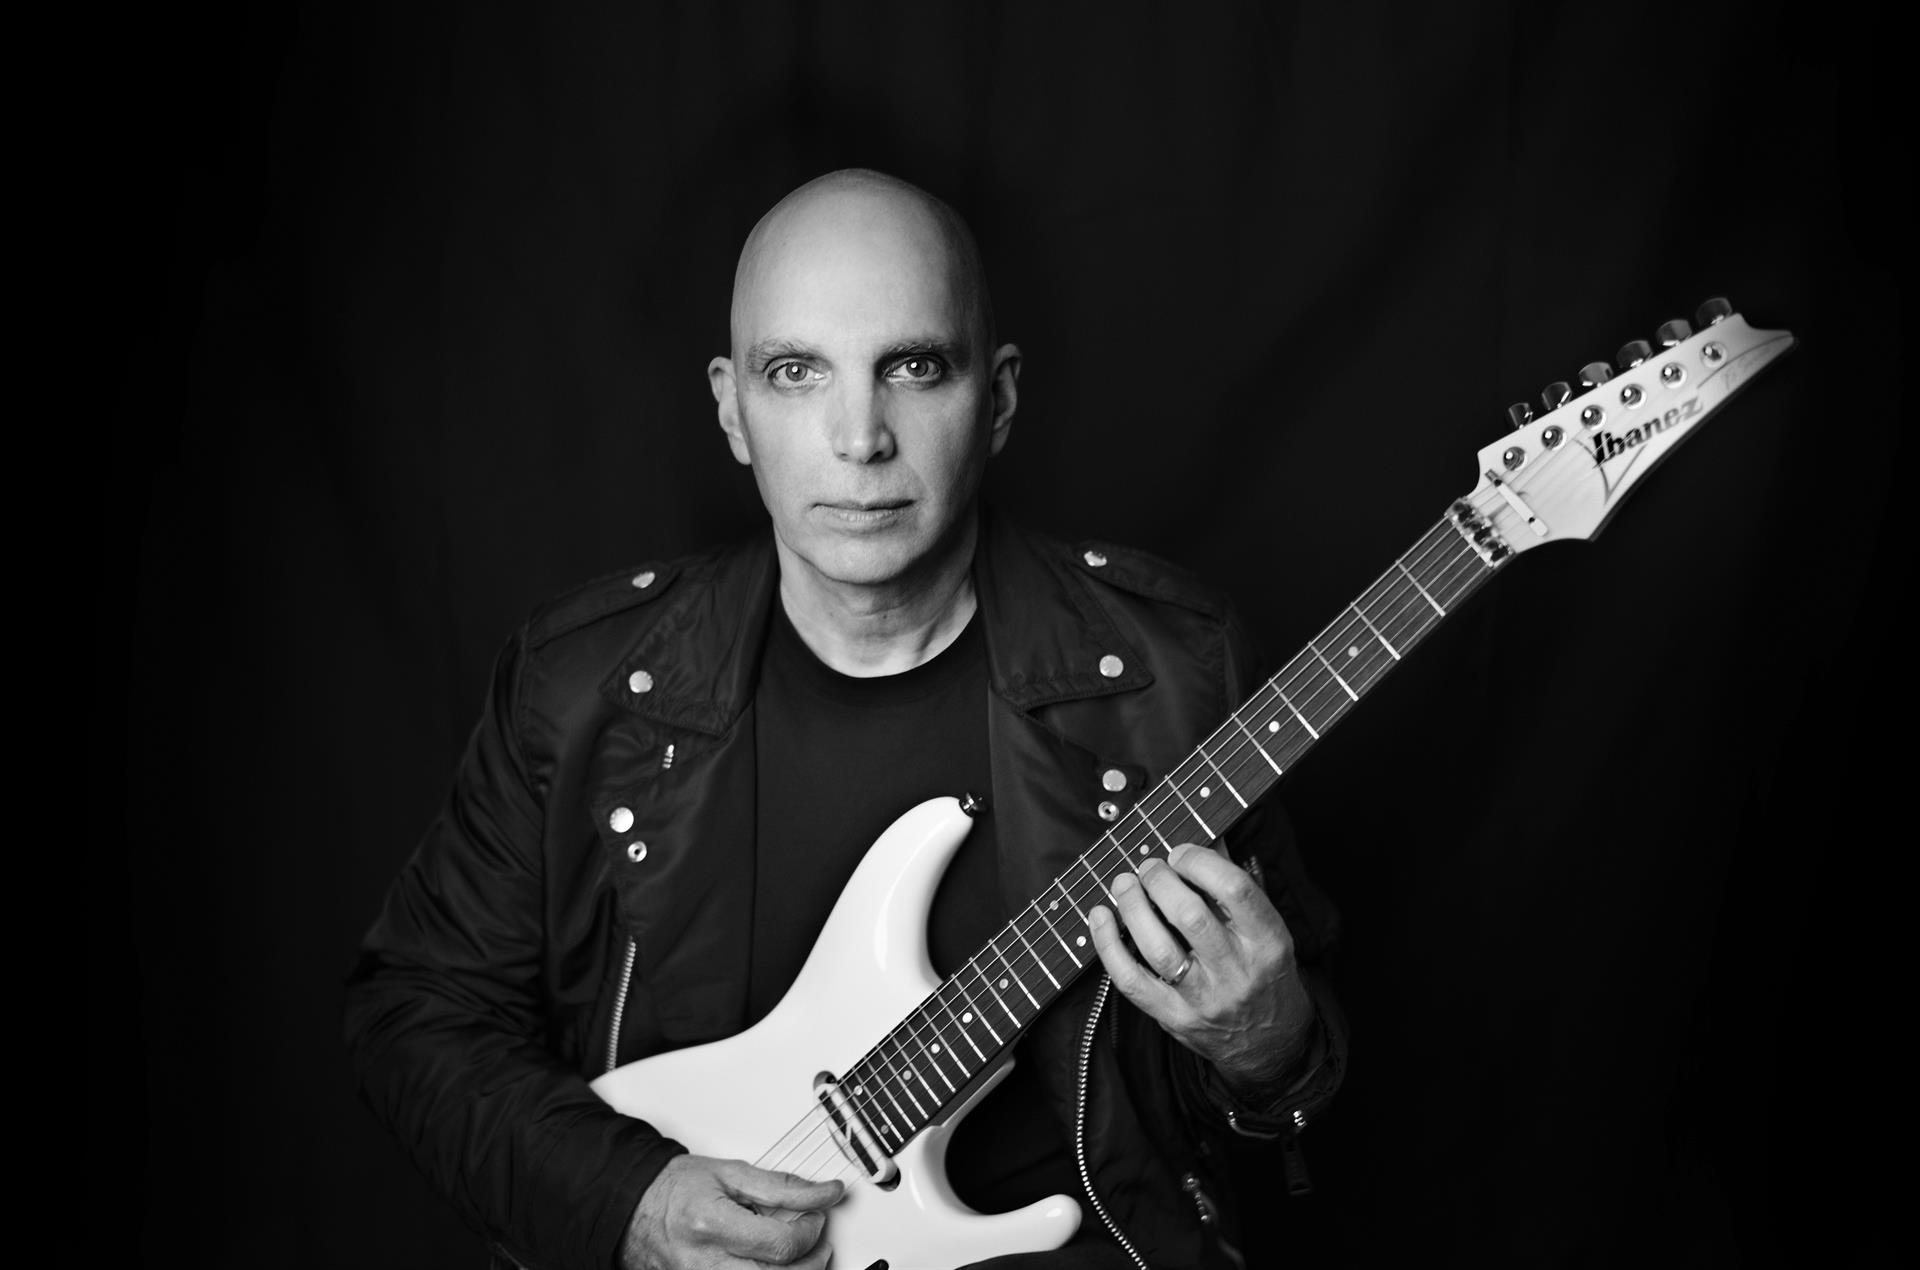 Fotografía cortesía de earMusic/Altafonte que muestra al guitarrista Joe Satriani. EFE/ Eduardo Dolhun/ Earmusic/altafonte SOLO USO EDITORIAL SOLO DISPONIBLE PARA ILUSTRAR LA NOTICIA QUE ACOMPAÑA (CRÉDITO OBLIGATORIO)
